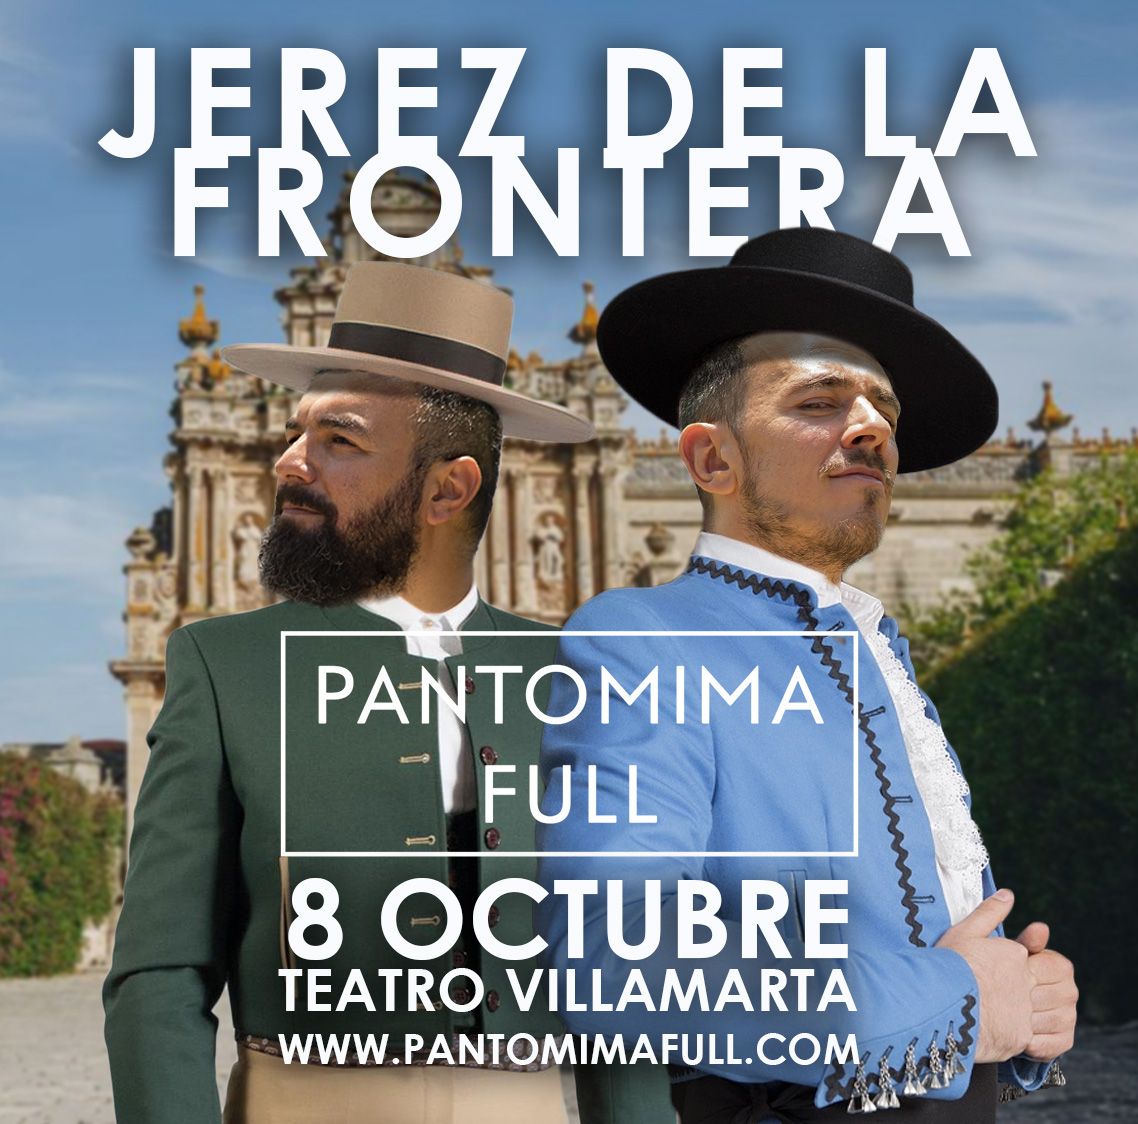 Los componentes de Pantomima Full en el cartel creado para su actuación en Villamarta.